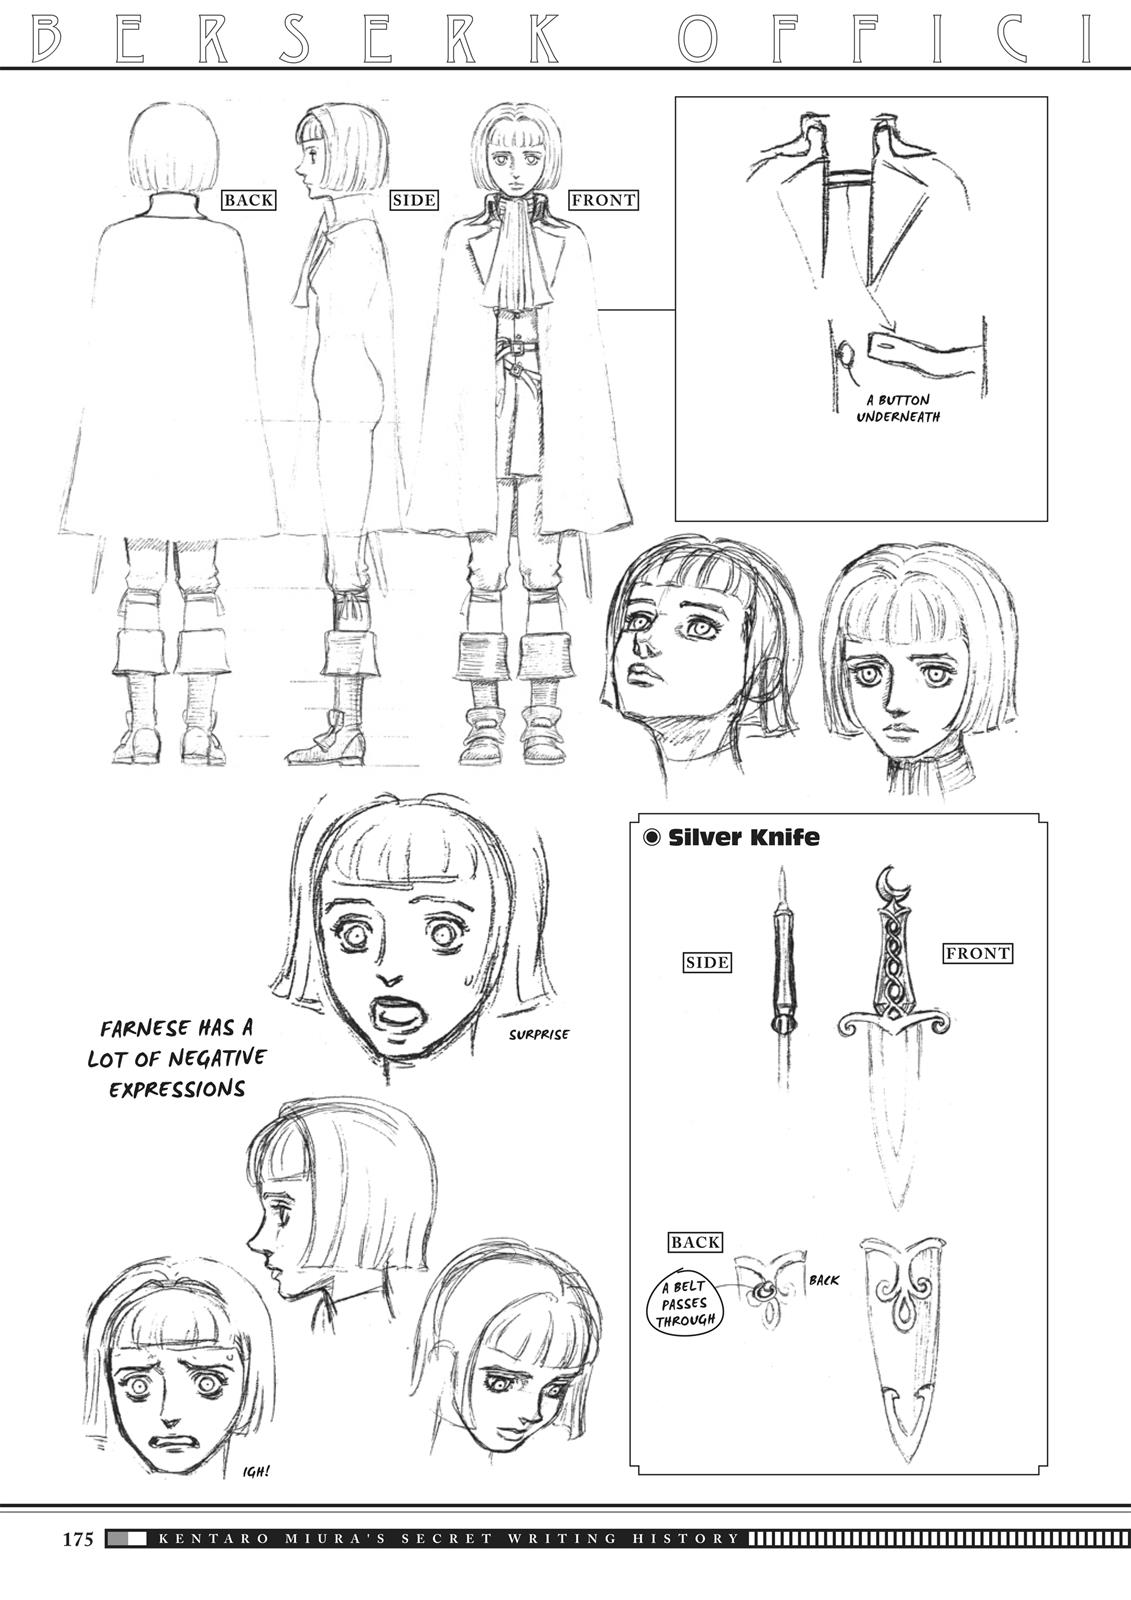 Berserk Manga Chapter 350.5 image 172